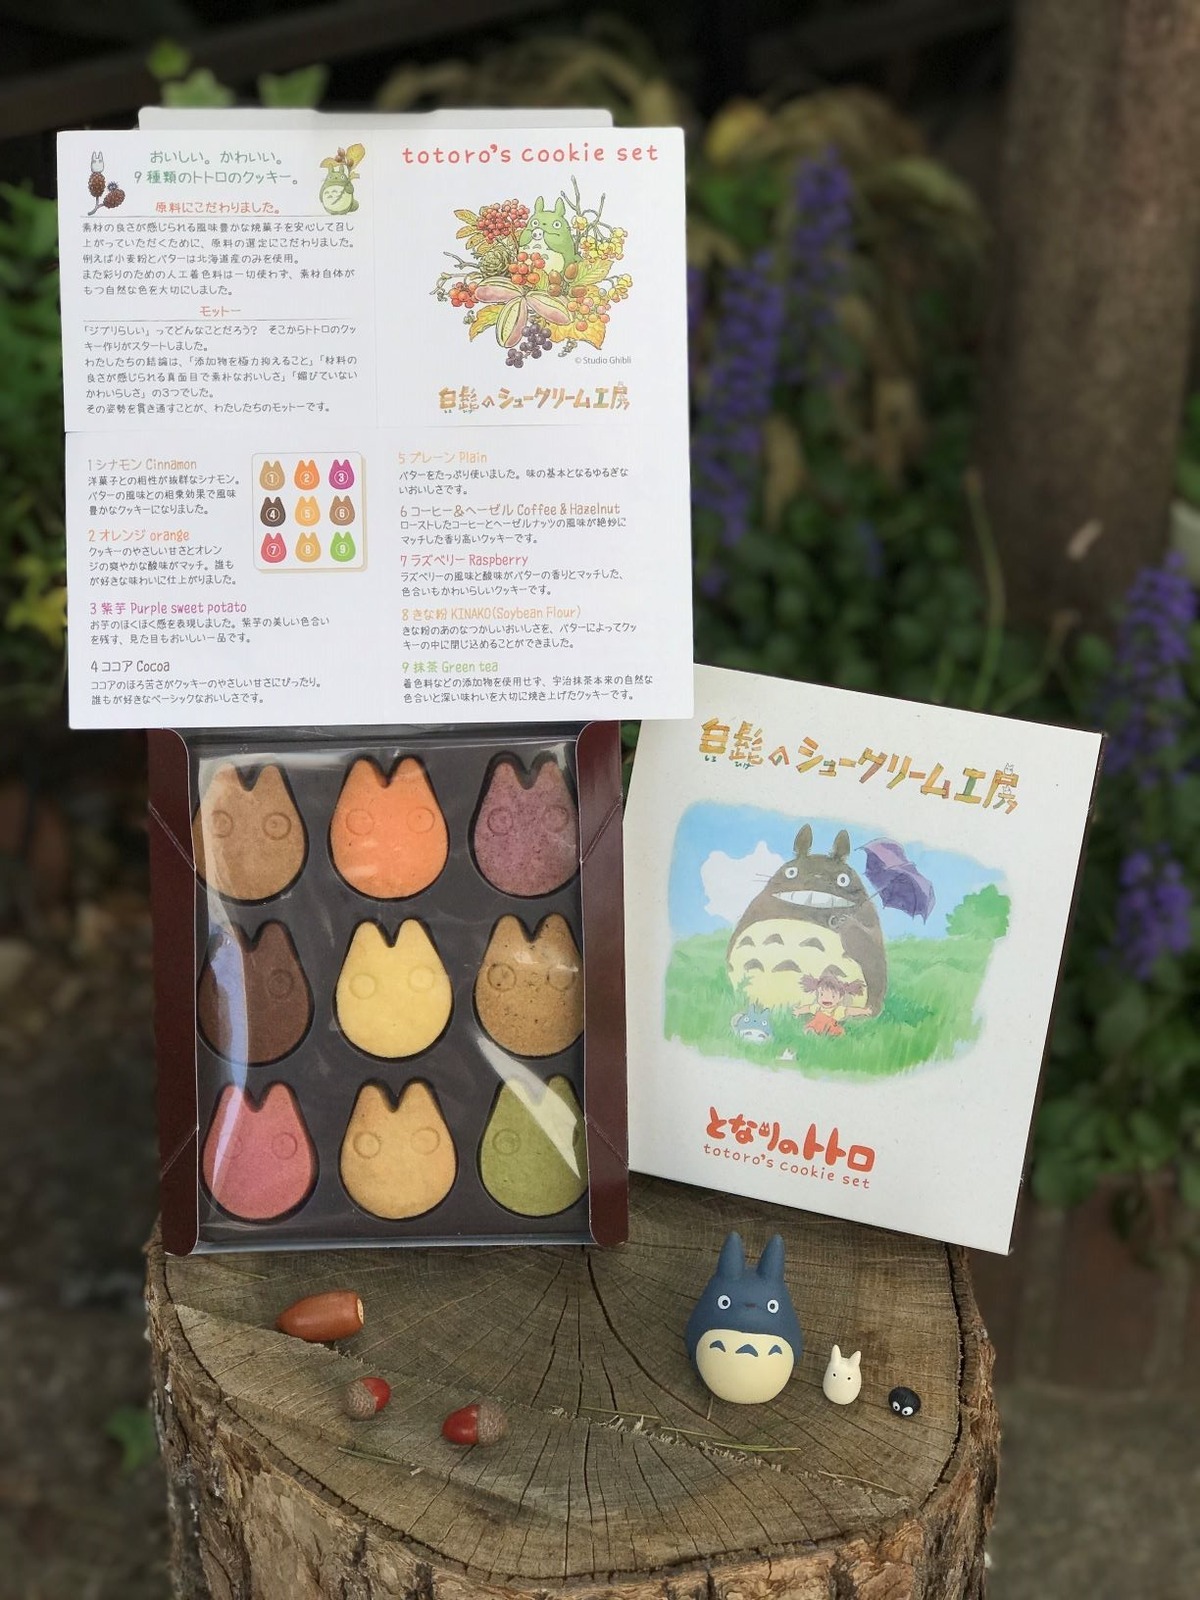 トトロのクッキーBOX 1,250円 ※数量限定
© Studio Ghibli